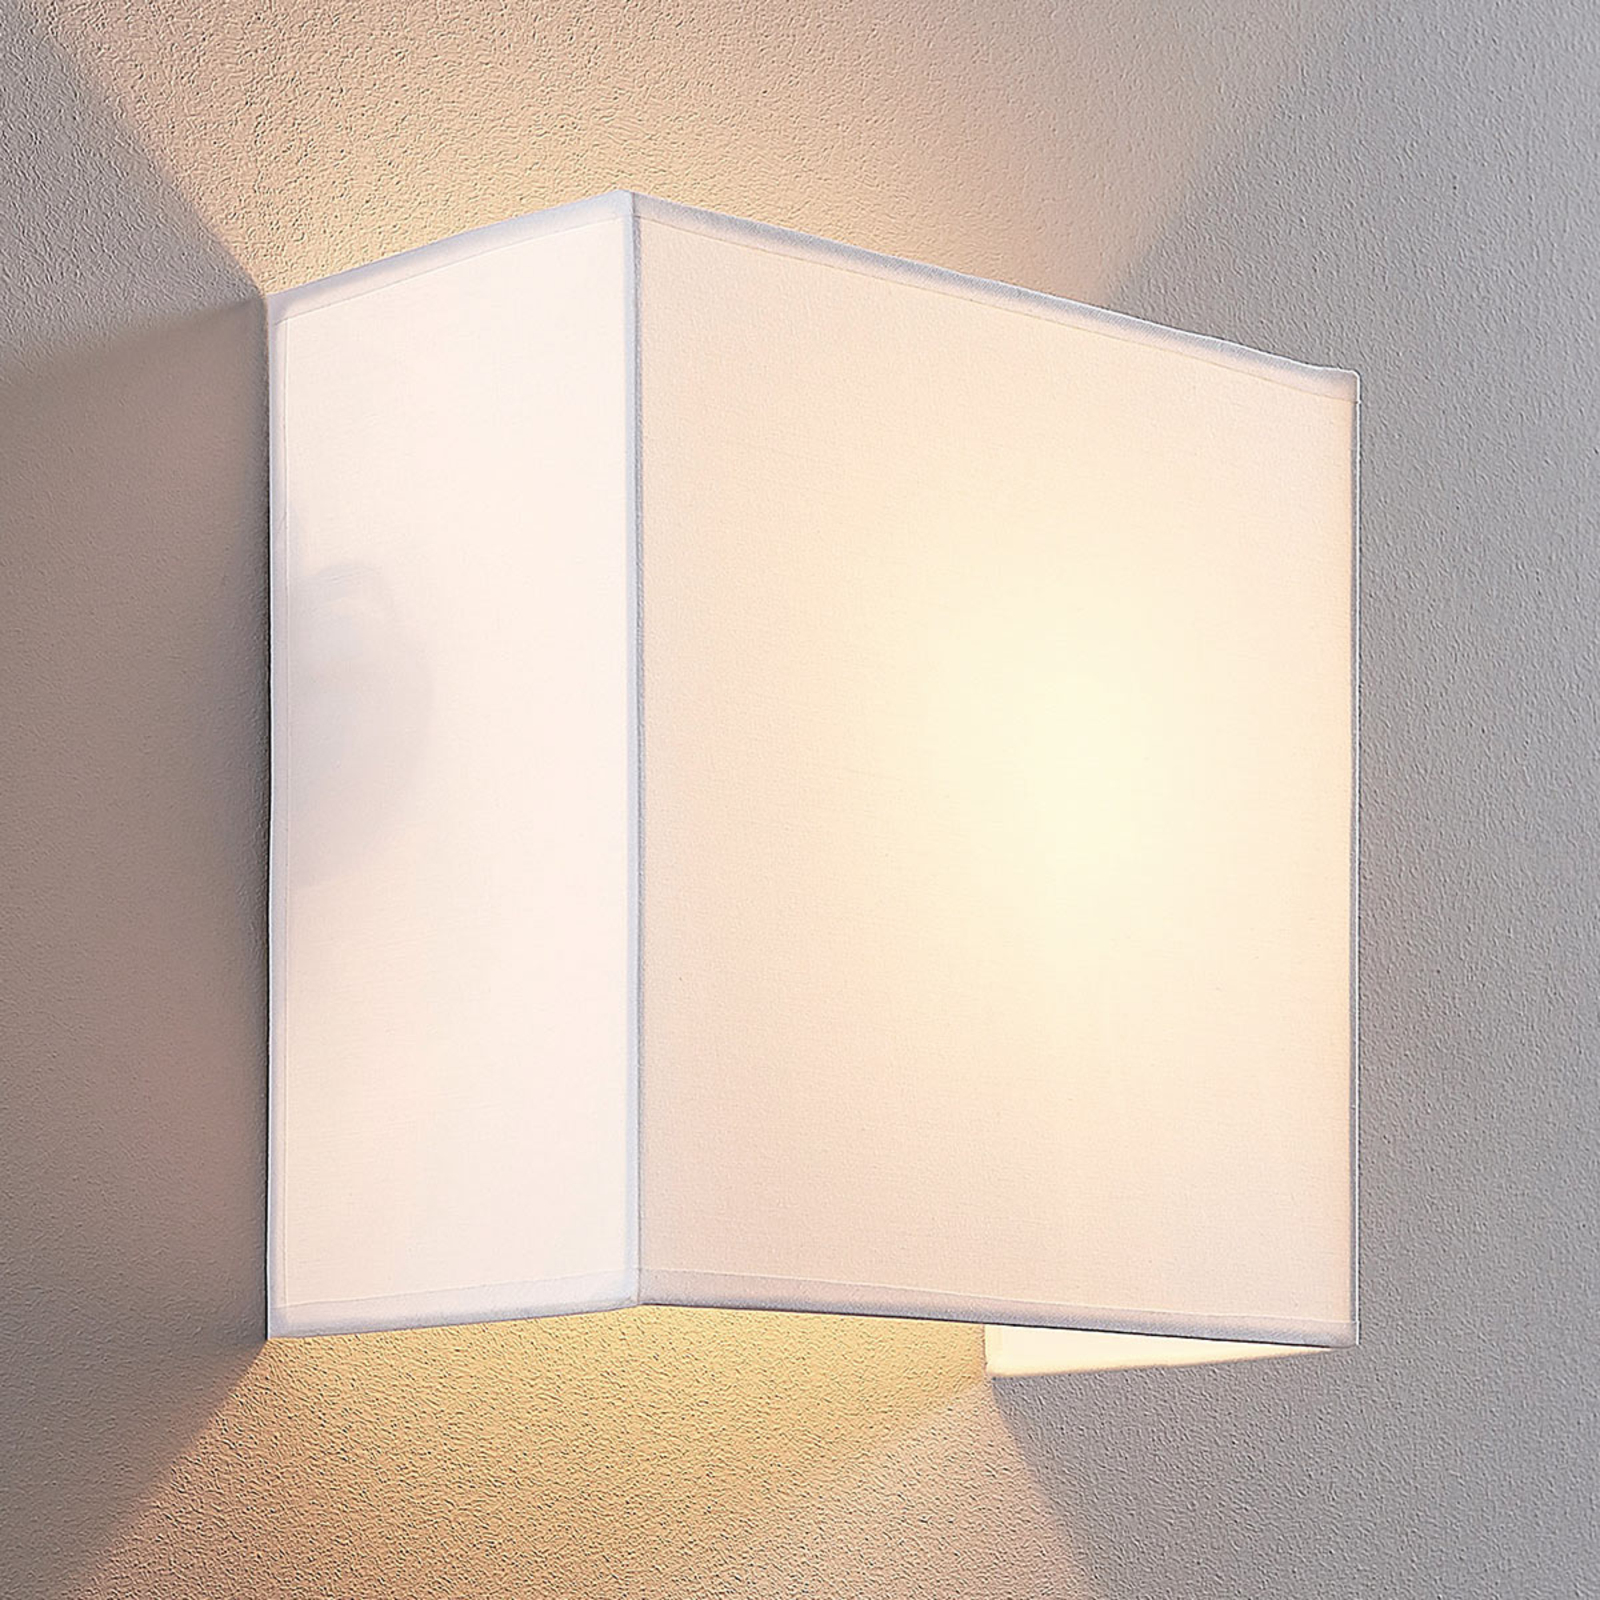 Lampa ścienna Adea, 25 cm, kwadratowa, biała